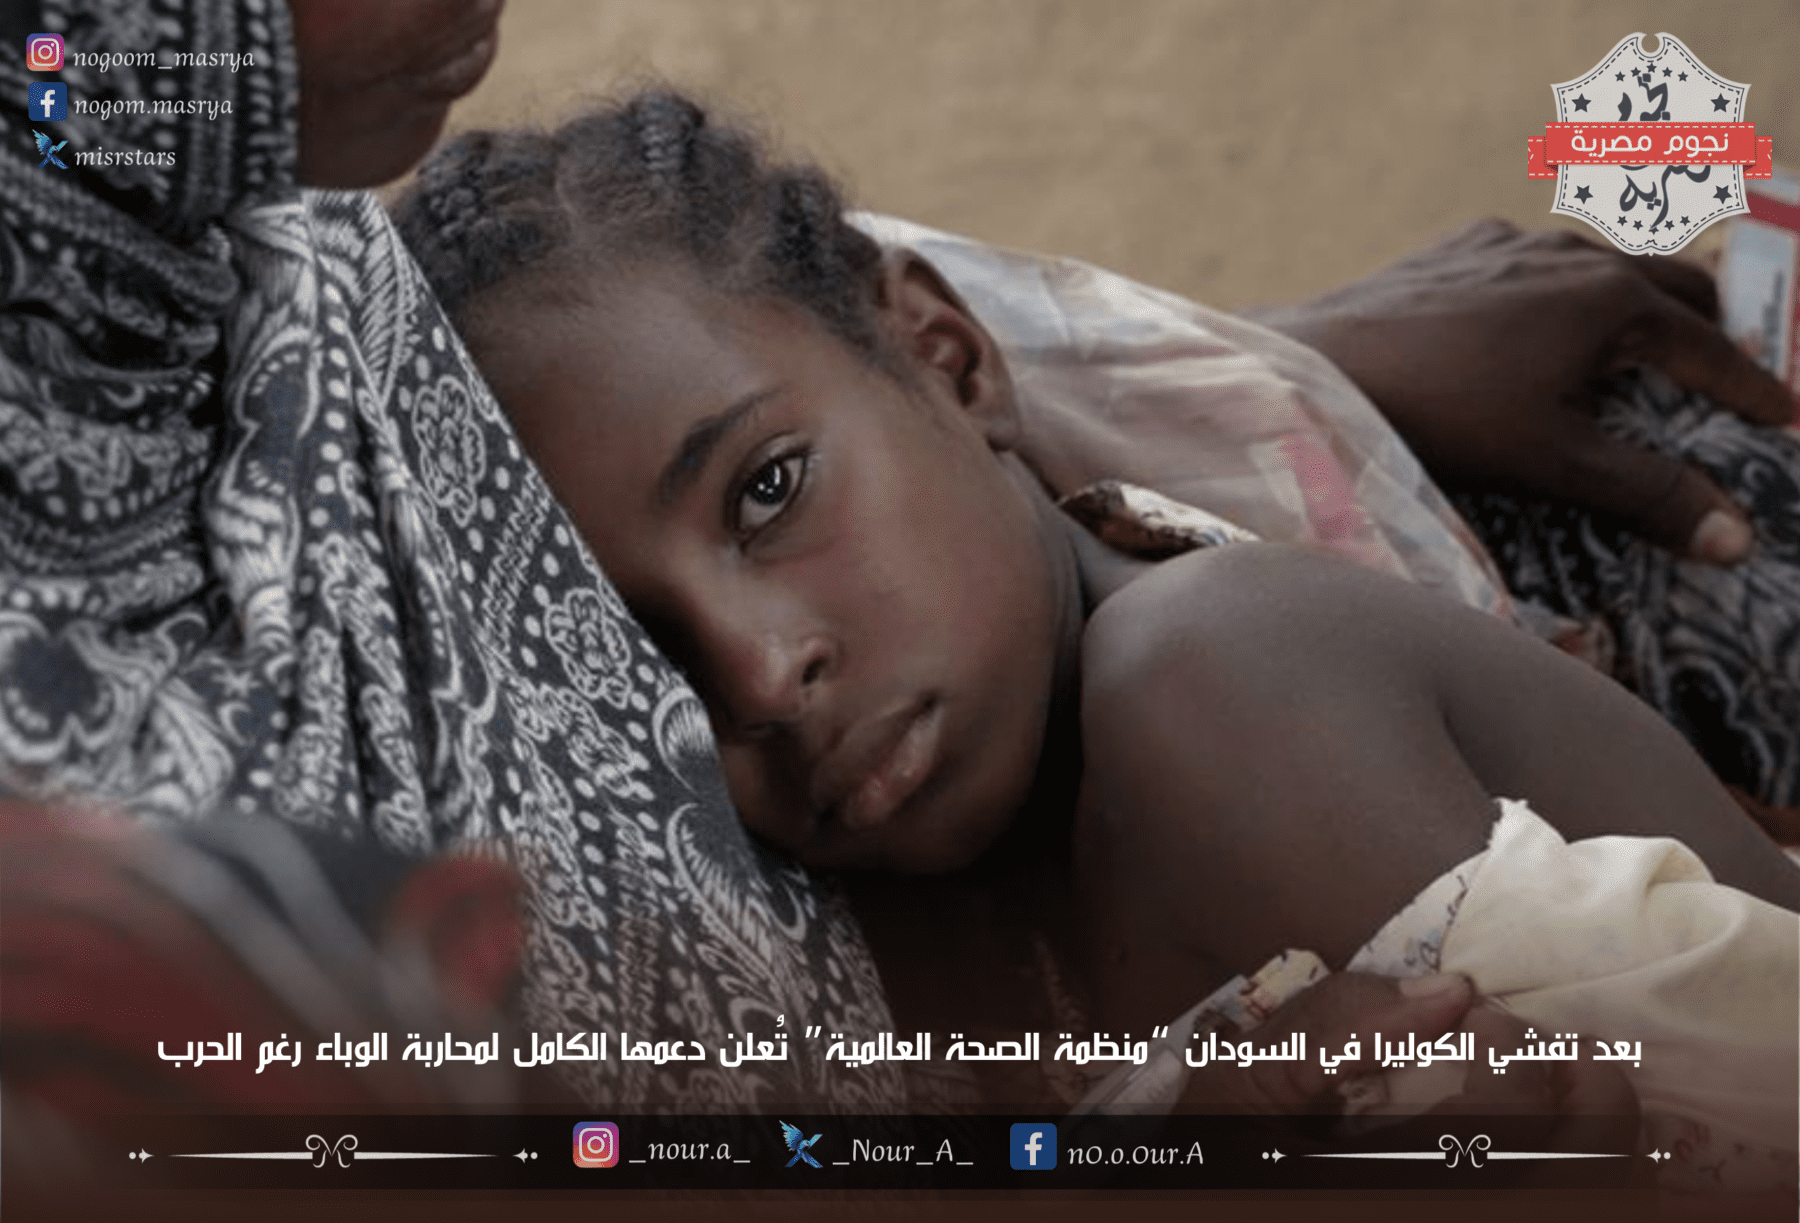 فتاة سودانية تستند على والدتها - مصدر الصورة: موقع United Nations